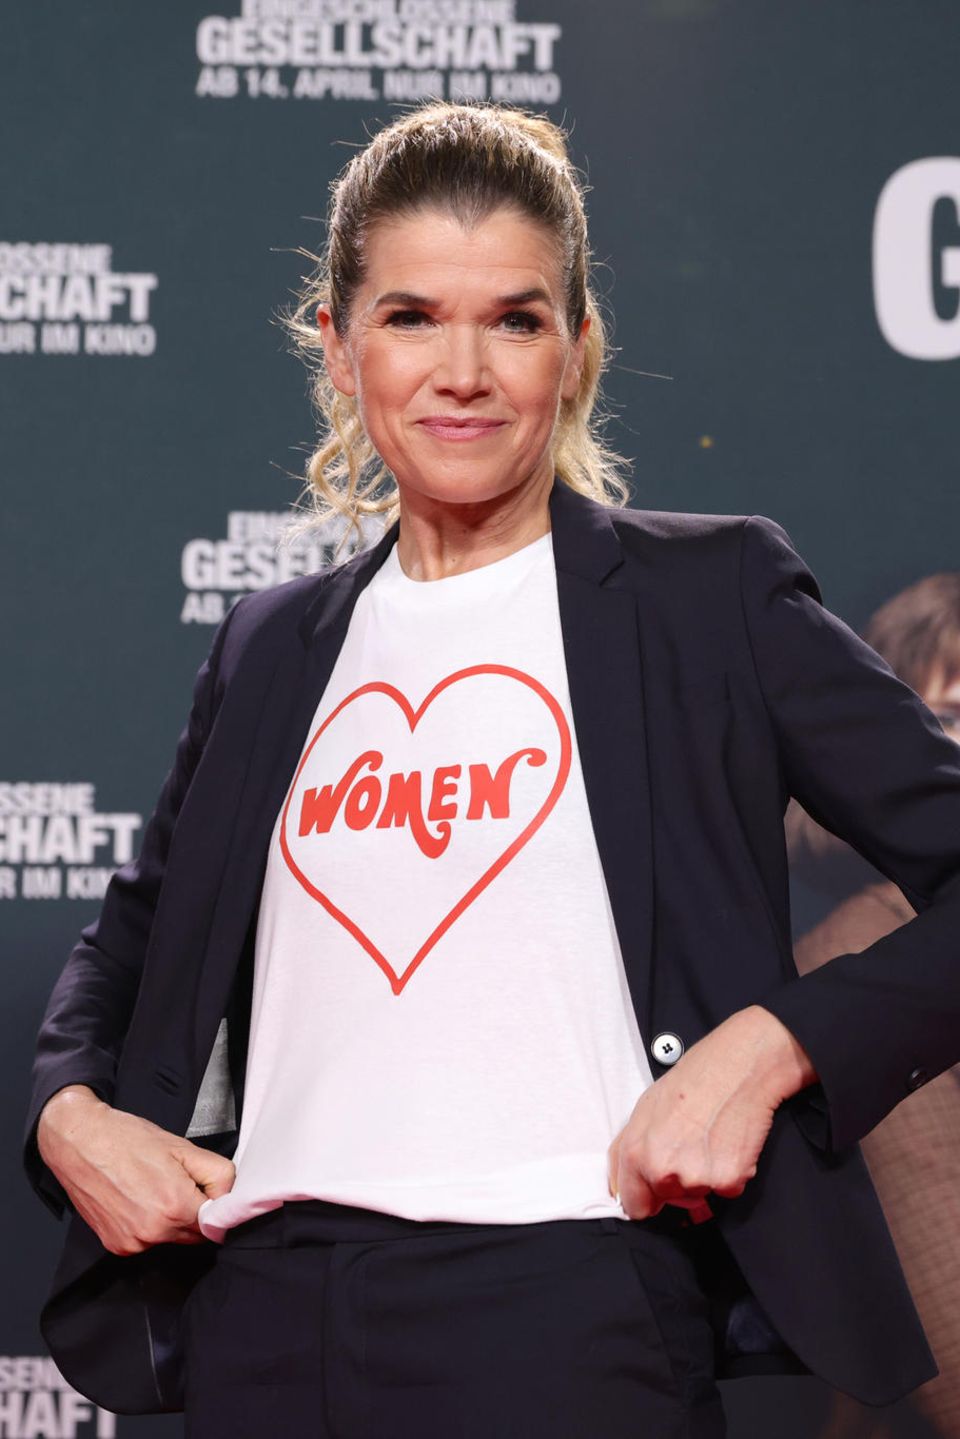 Zur Weltpremiere des Film "Eingeschlossene Gesellschaft" in Köln taucht Schauspielerin Anke Engelke mit einer klaren Botschaft auf. Das T-Shirt der 56-Jährigen ziert ein rotes Herz mit der Aufschrift "Frauen". In dem neuen Film, der am 14. April in die Kinos kommt, spielt Engelke eine der Hauptrollen.